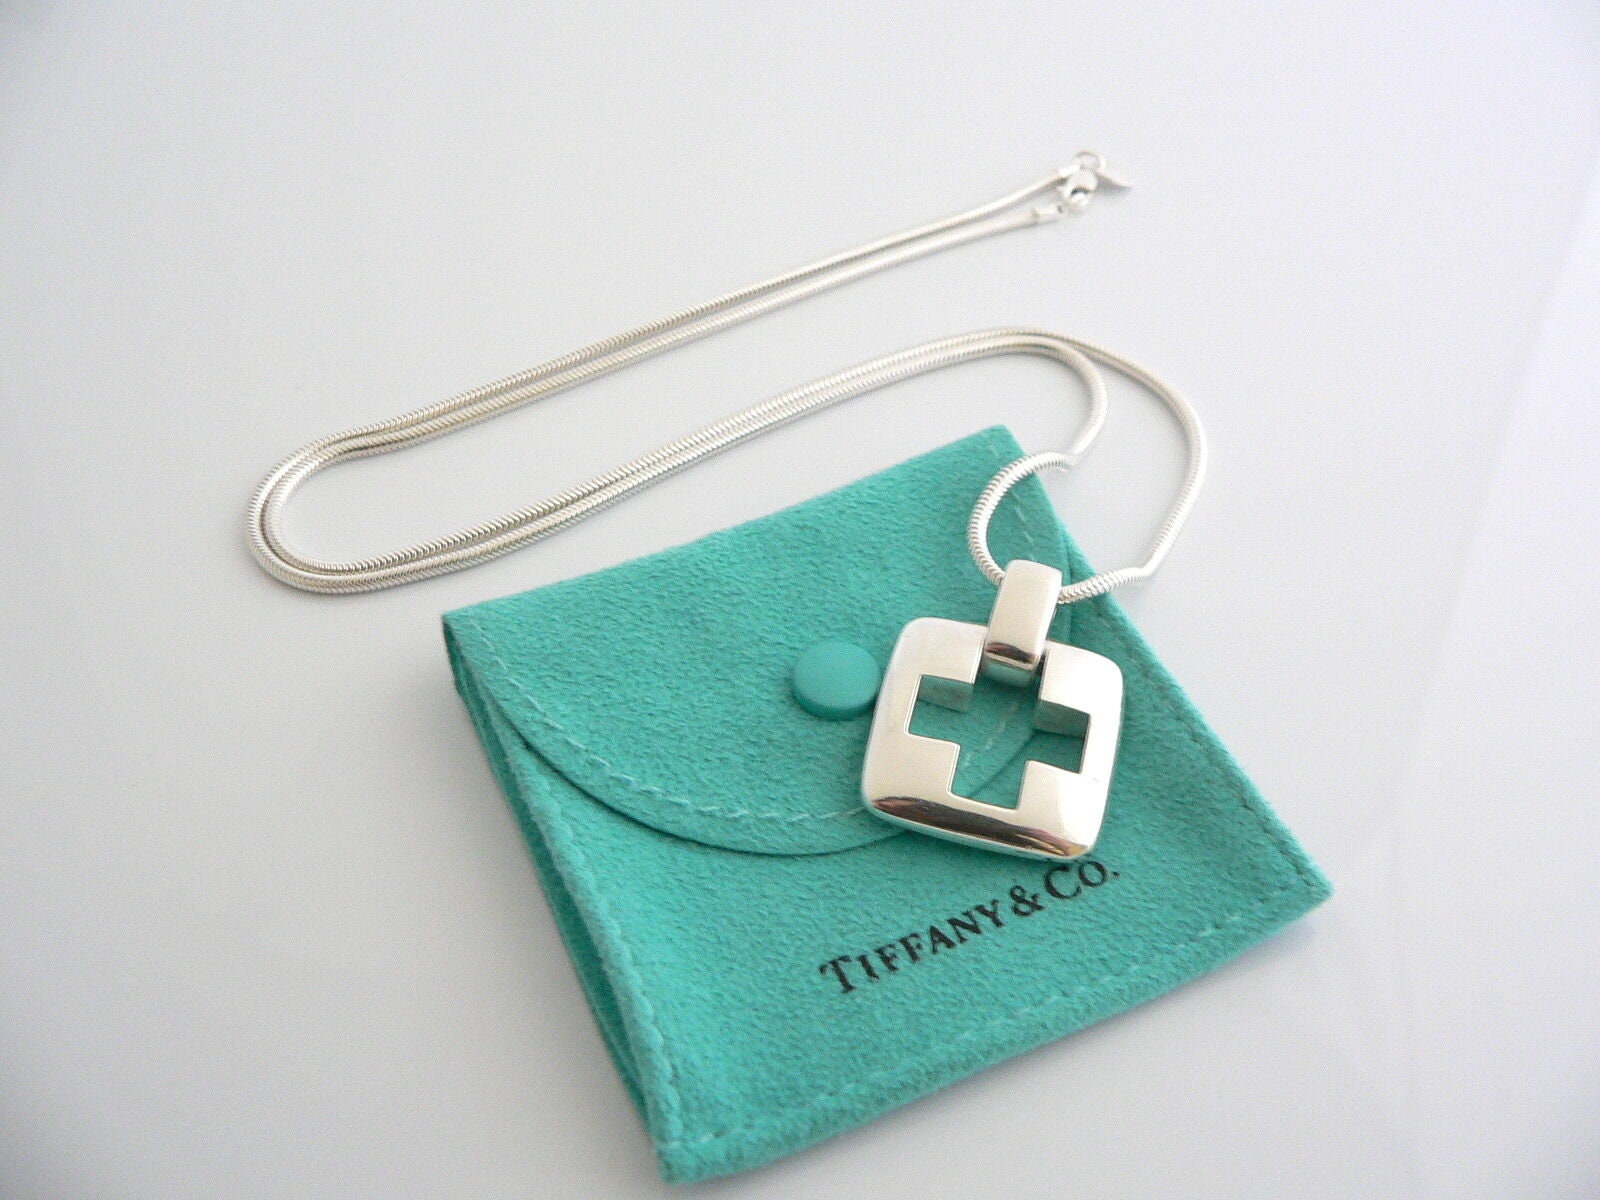 Tiffany & Co Sterling Silver Bracelet Necklace Link Oval Clasp